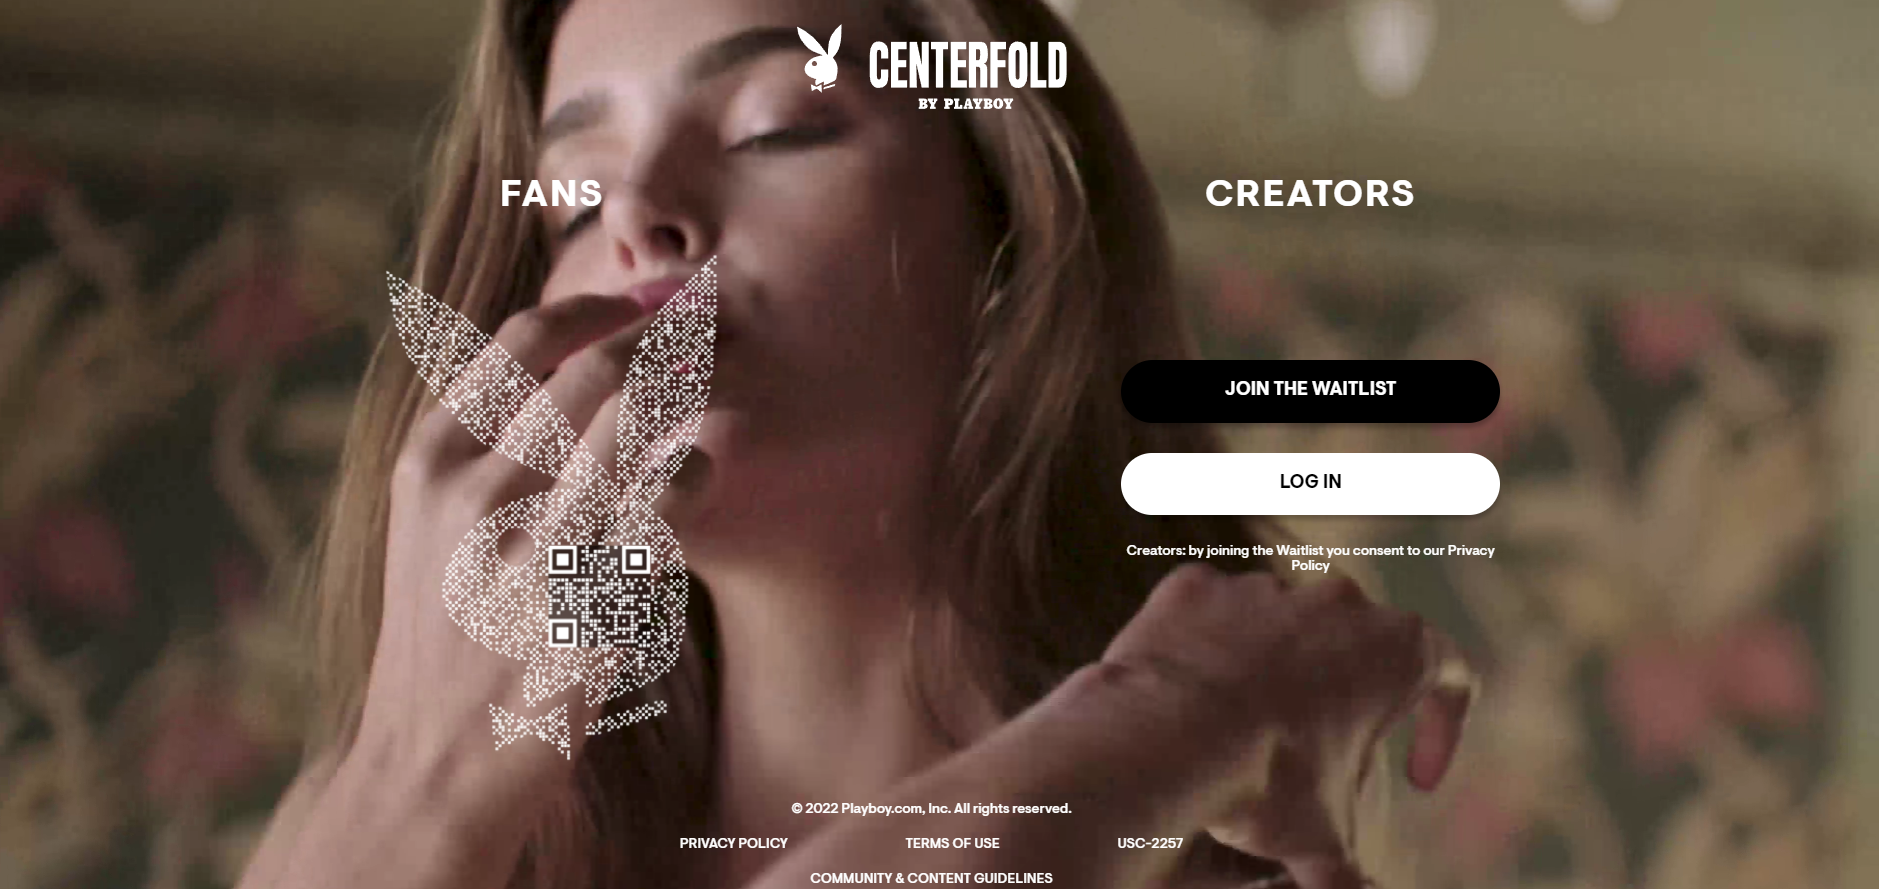 Cómo es Centerfold, el “Only Fans” de Playboy